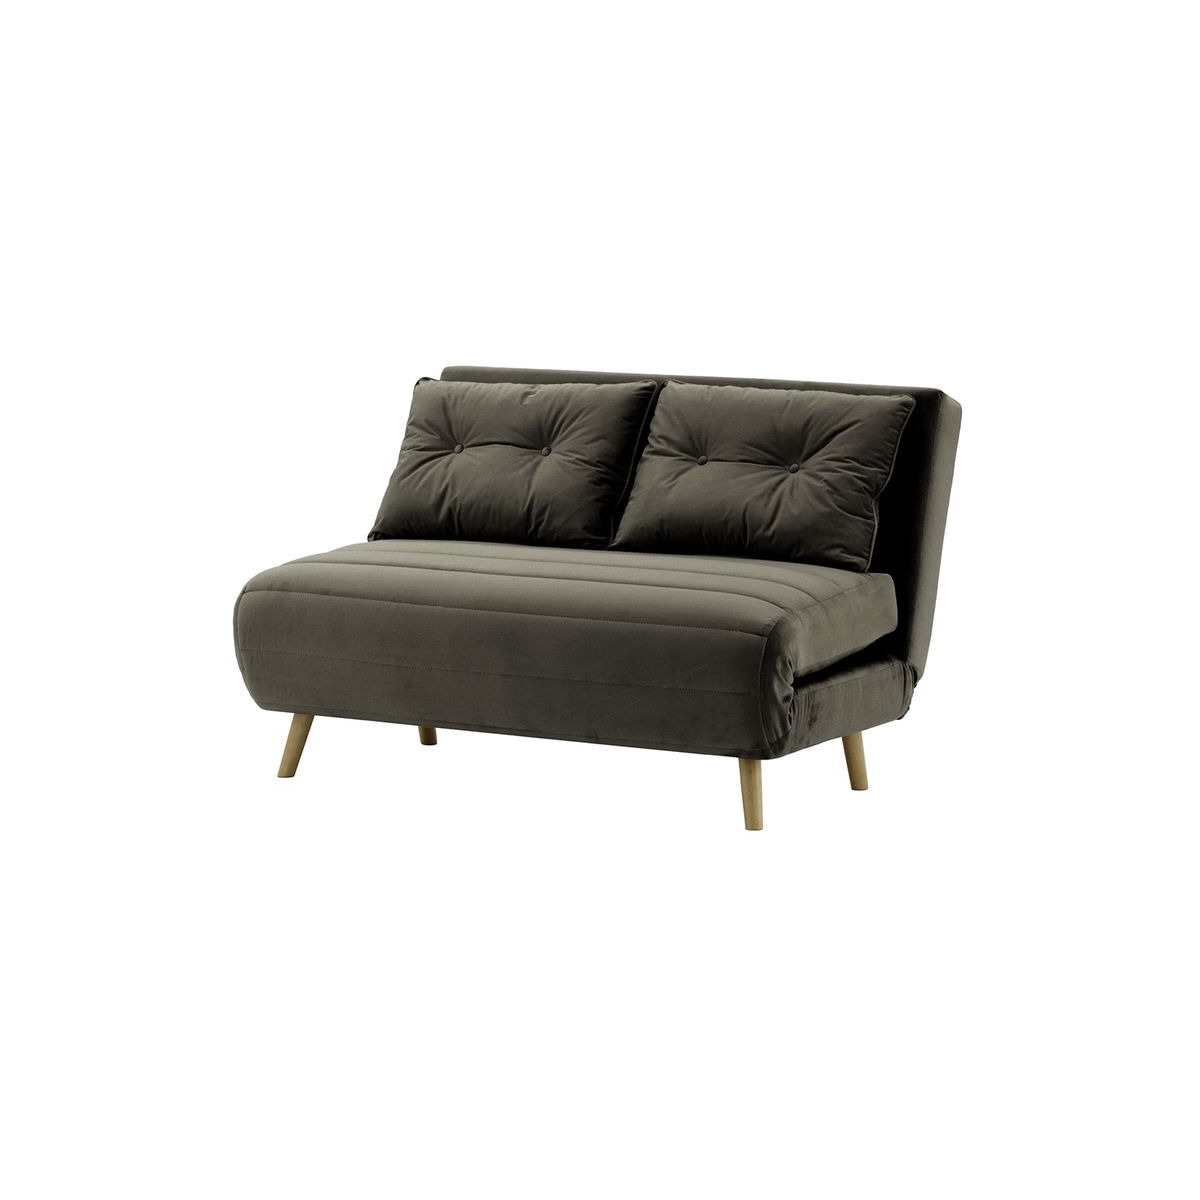 Flic Double Sofa Bed - width 120 cm, graphite, Leg colour: wax black - image 1